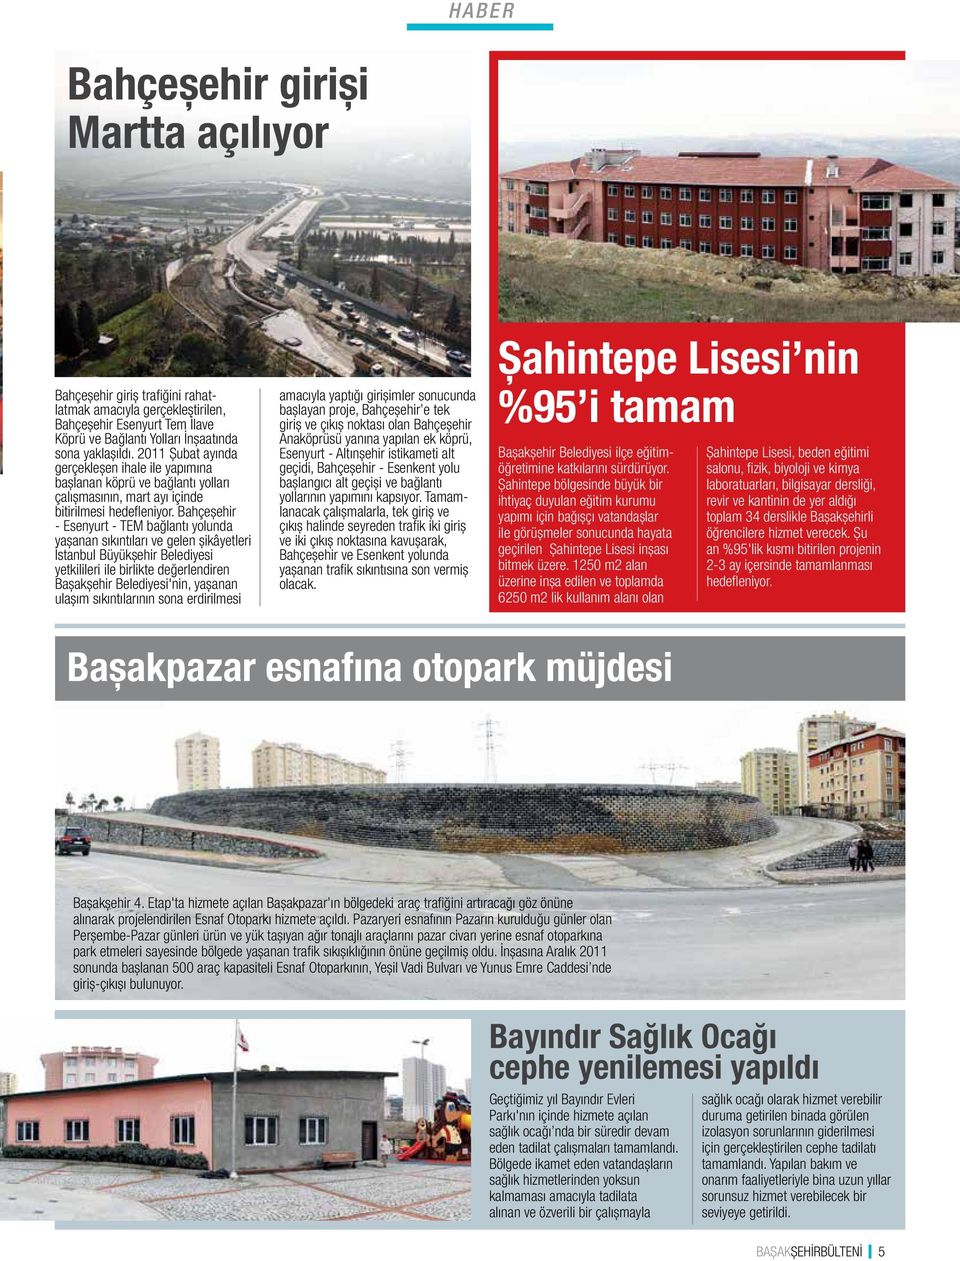 Bahçeşehir - Esenyurt - TEM bağlantı yolunda yaşanan sıkıntıları ve gelen şikâyetleri İstanbul Büyükşehir Belediyesi yetkilileri ile birlikte değerlendiren Başakşehir Belediyesi'nin, yaşanan ulaşım